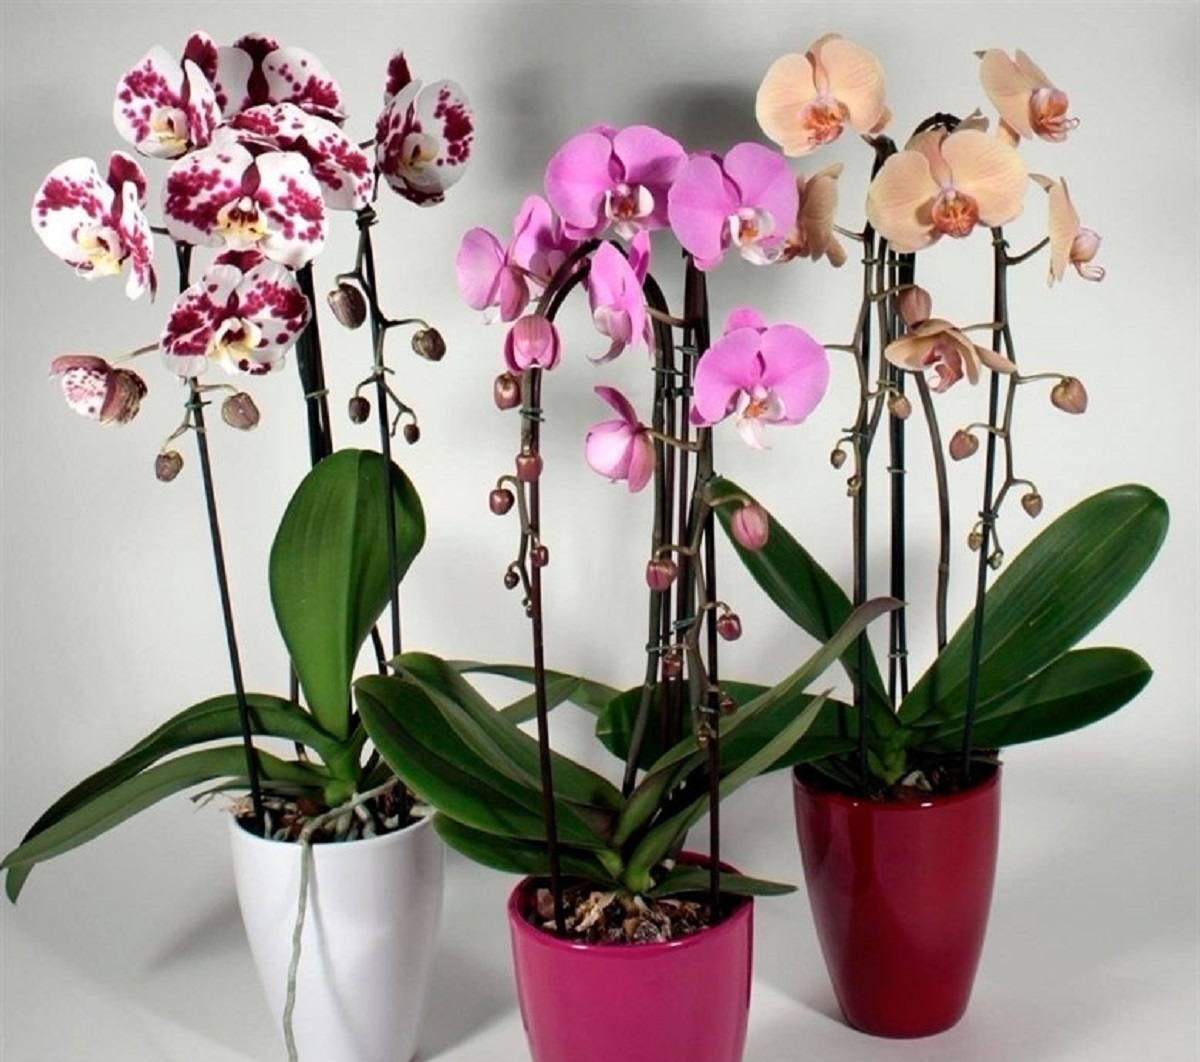 Купить орхидею в саратове. Орхидея ambiance Phalaenopsis. Орхидея Изабель фаленопсис. Arezzo фаленопсис. Орхидея Мальва фаленопсис.